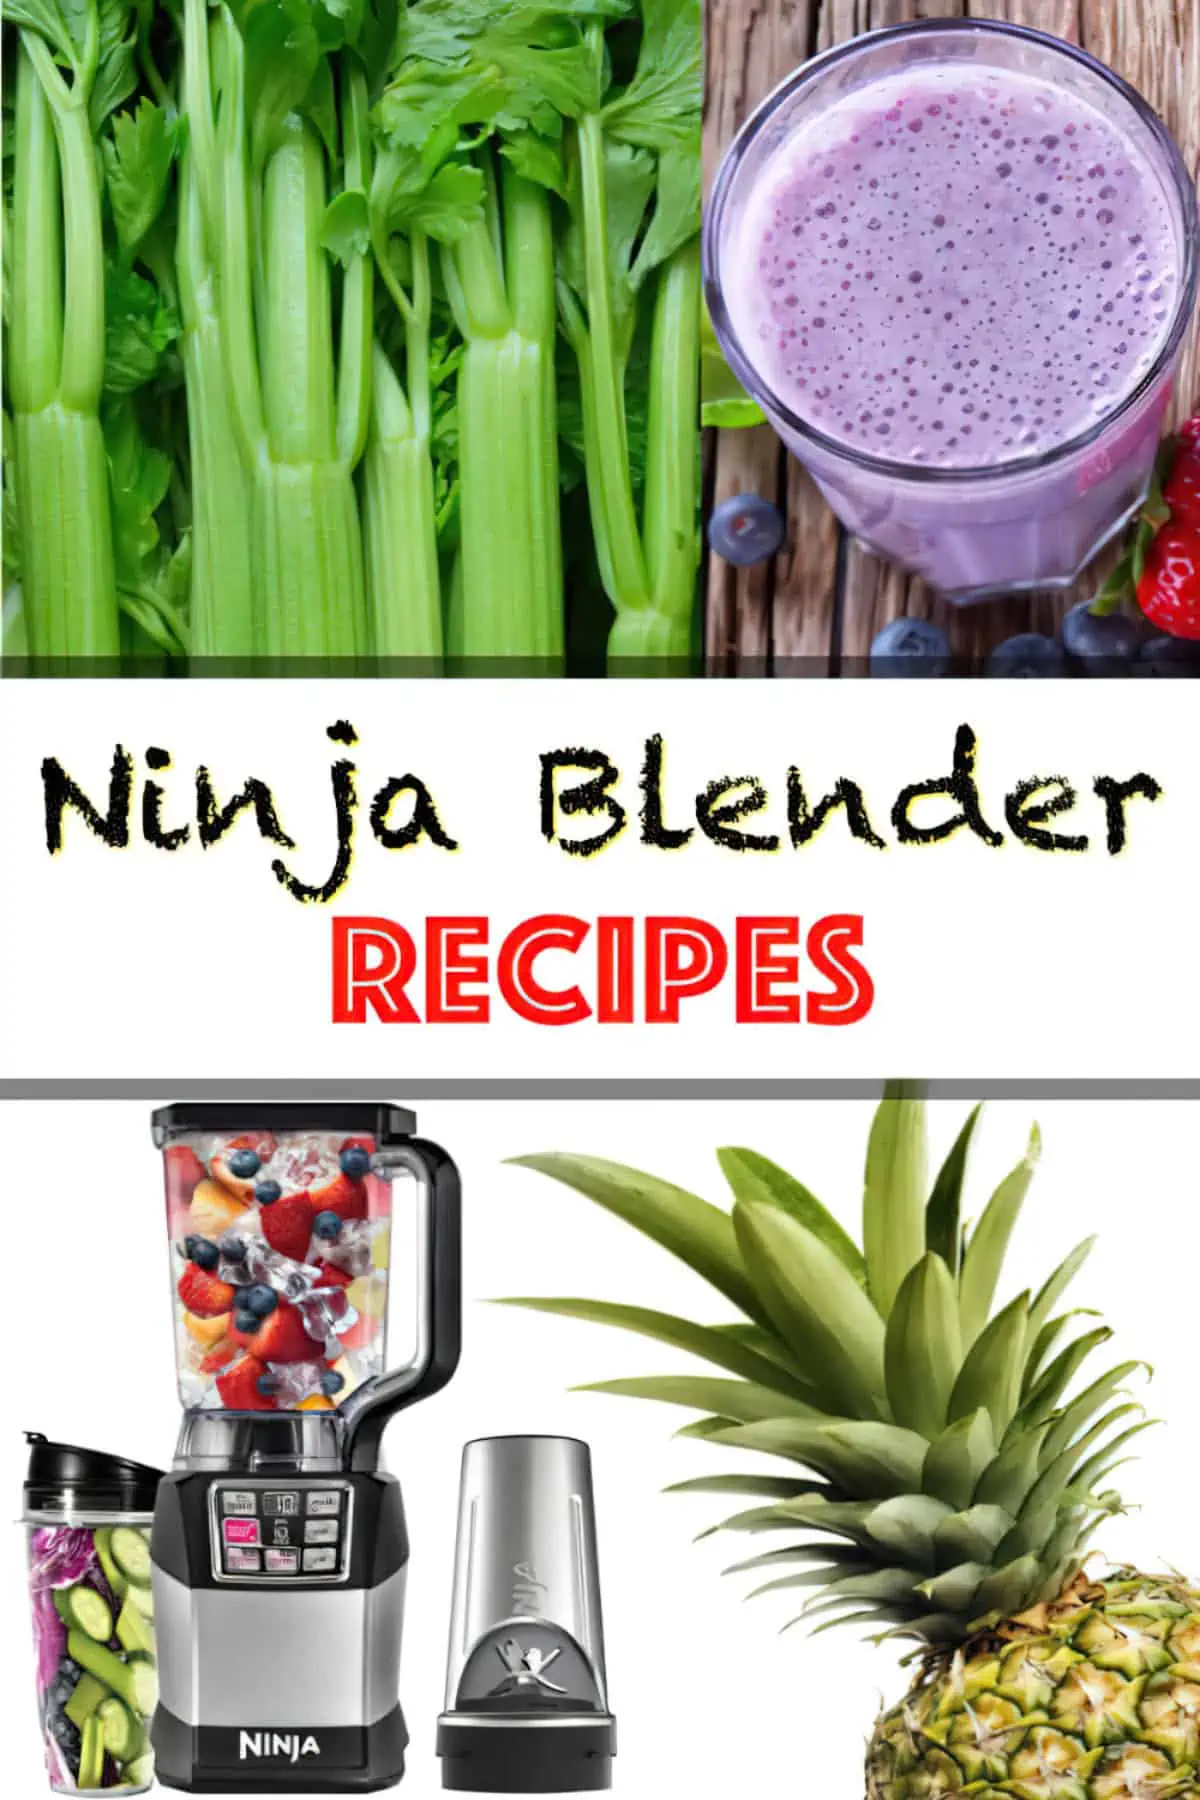 Ninja Smoothie Recipes